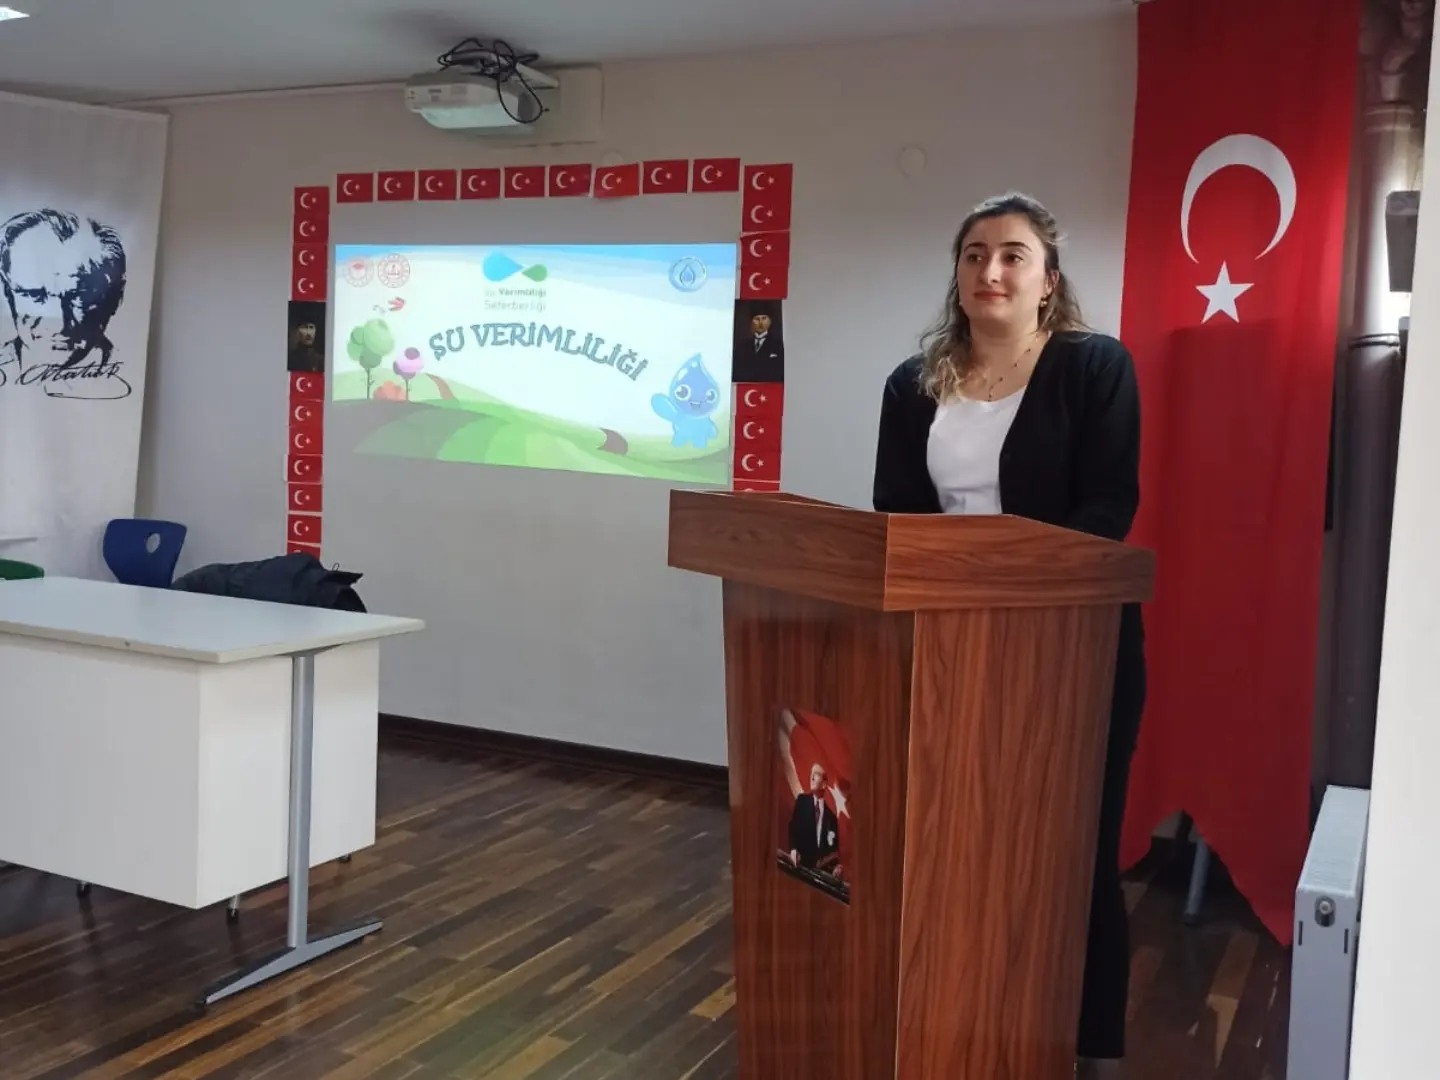 Polatlı'da Su Verimliliği Seferberliği Kapsamında Eğitim Düzenlendi (2)